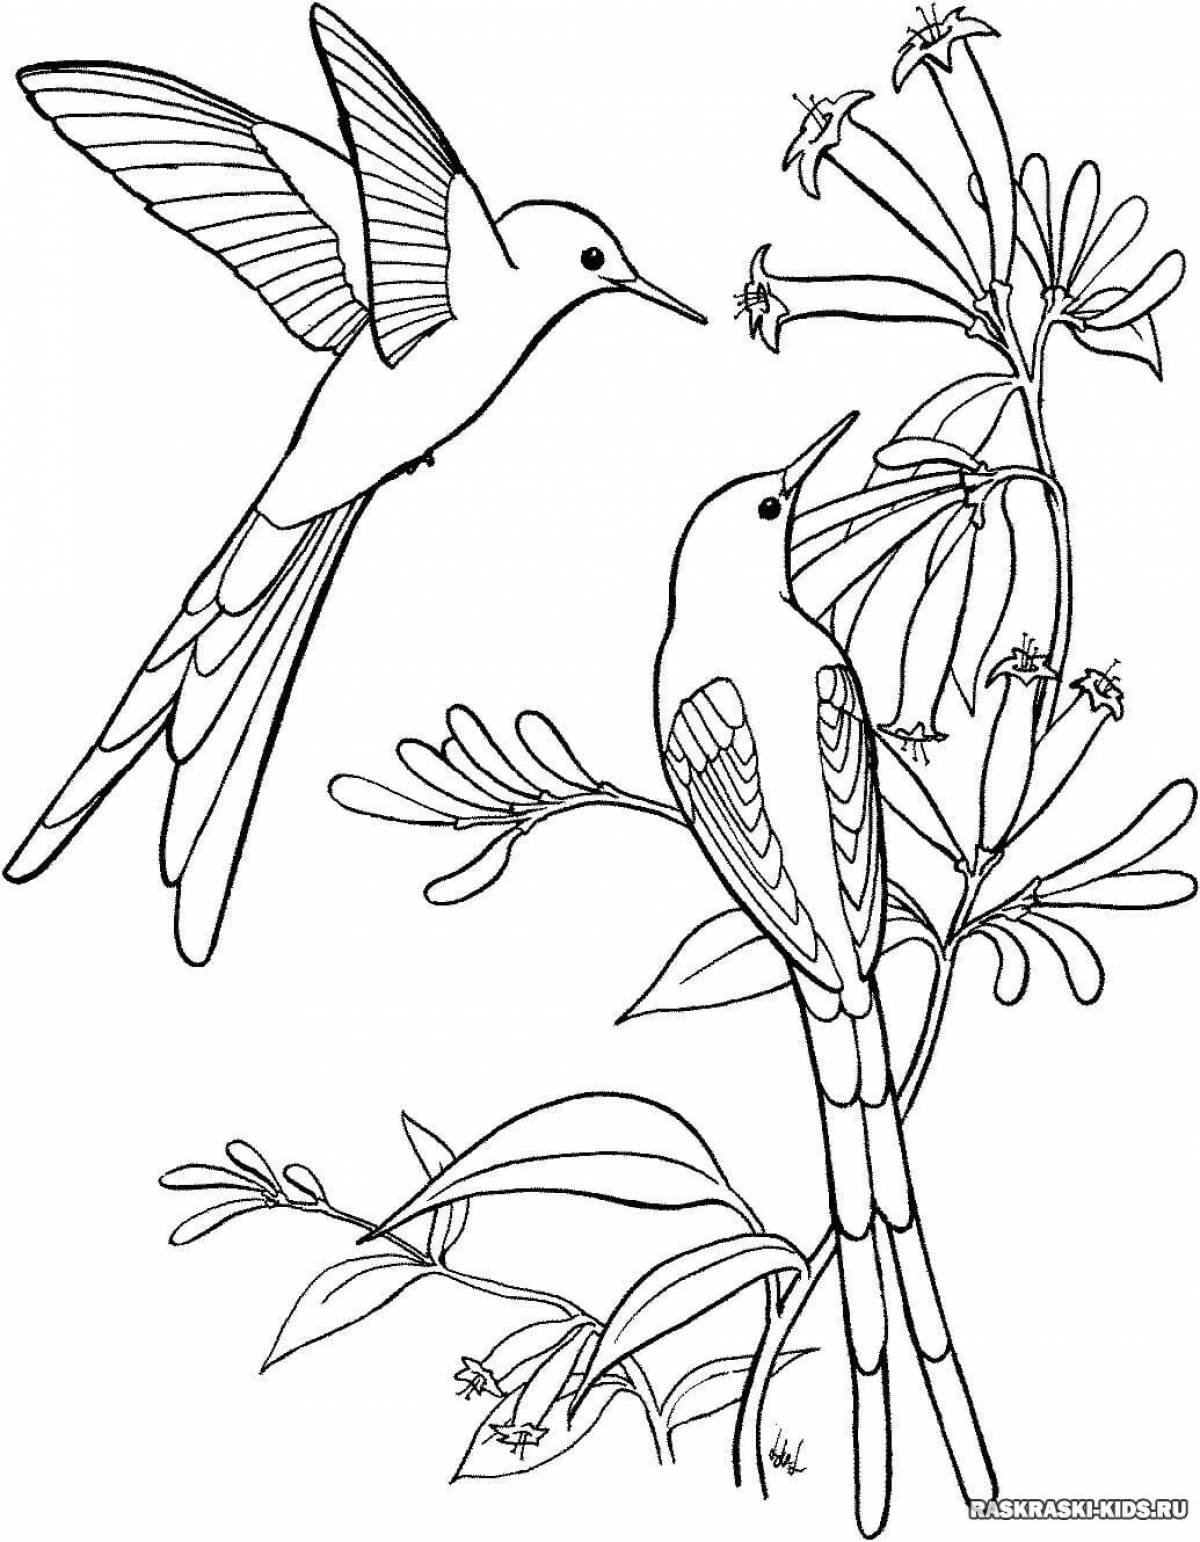 Художественная раскраска колибри птица